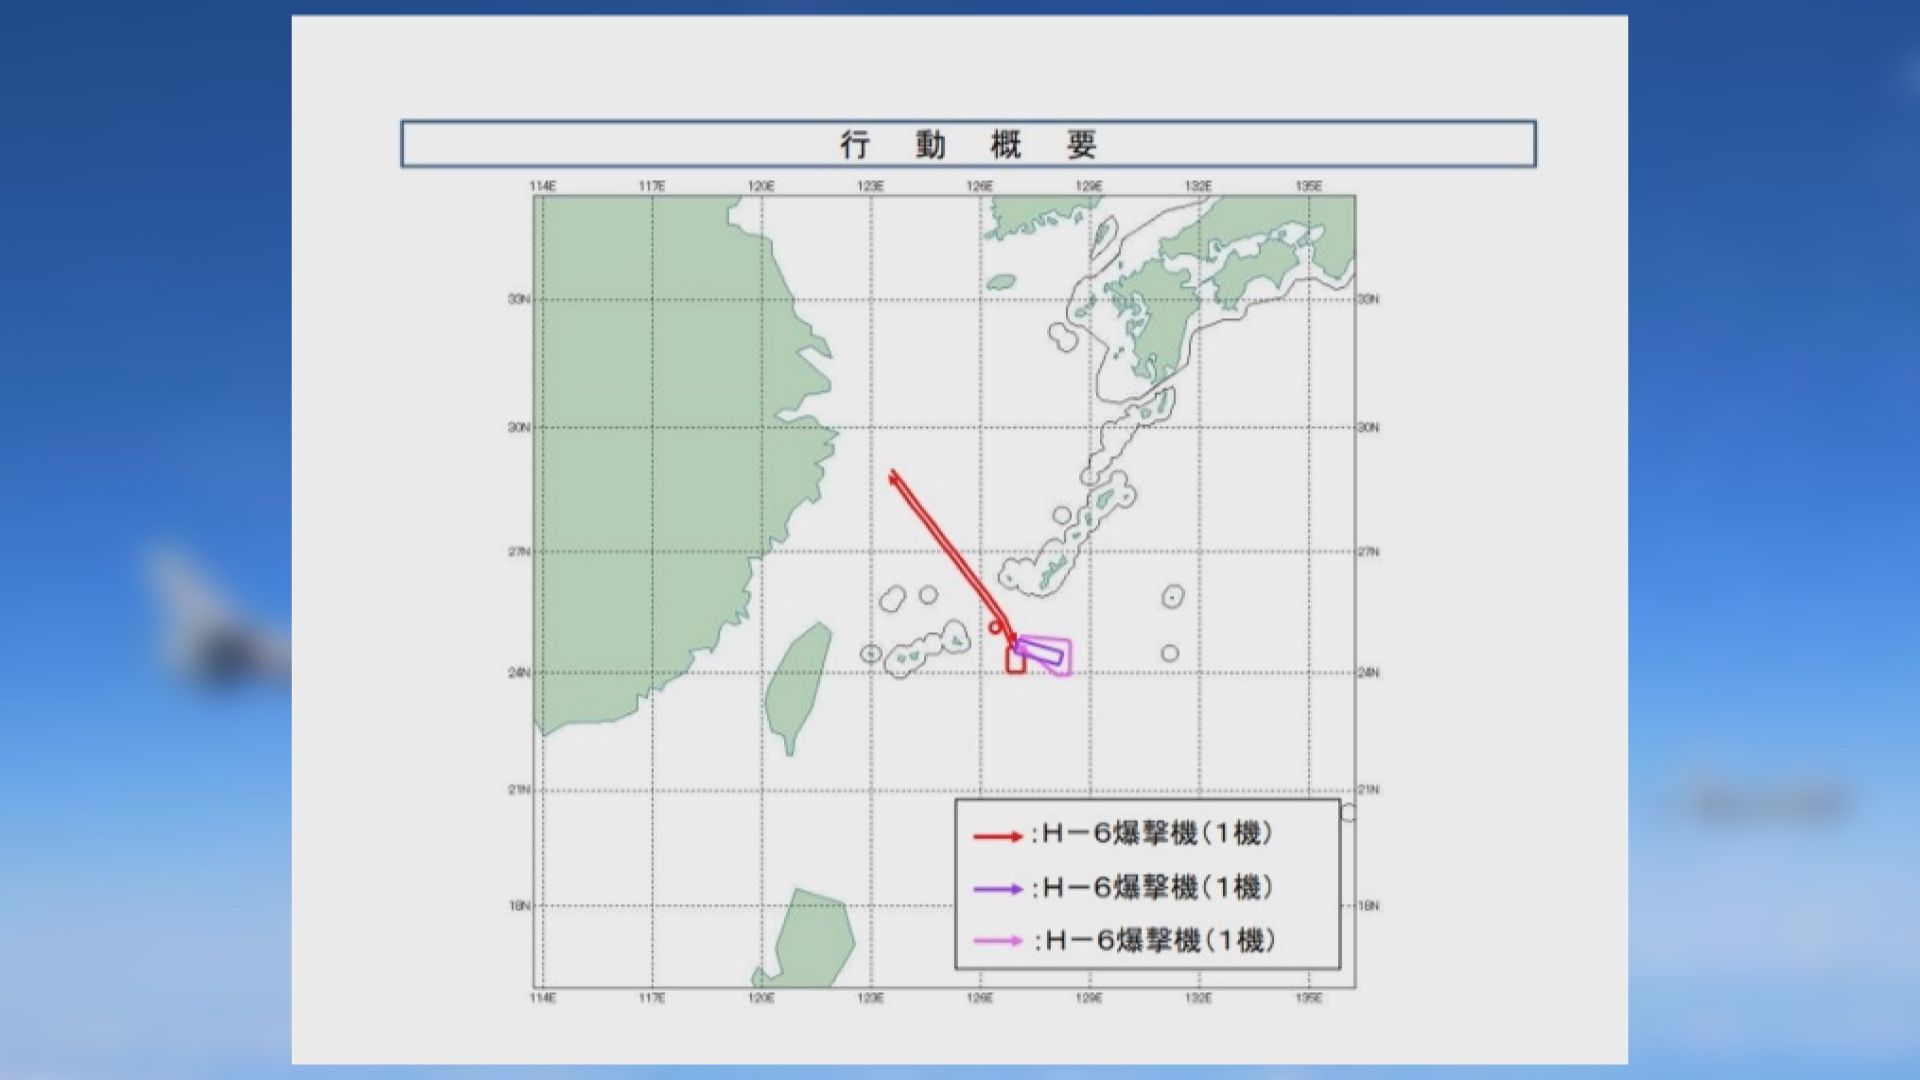 日本稱中國軍機飛過宮古海峽　自衛隊戰機升空監視